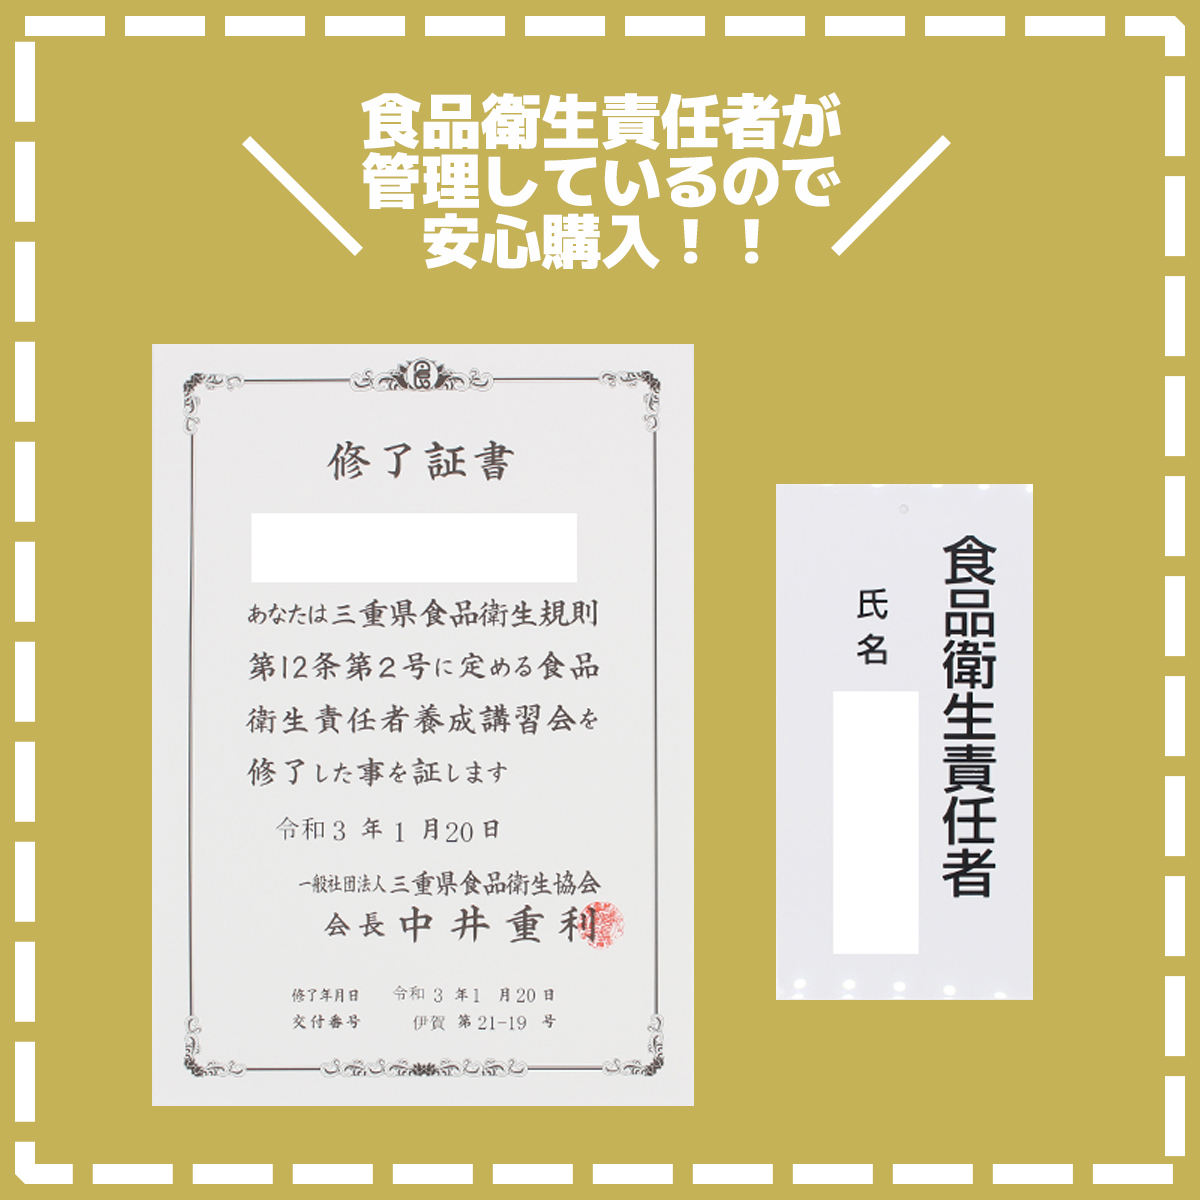 [ быстрое решение бесплатная доставка ] The автобус Athlete вес down шоколад тест 945g×1 пакет Meiji SAVAS скумбиря s белок качество .tore вес down s034